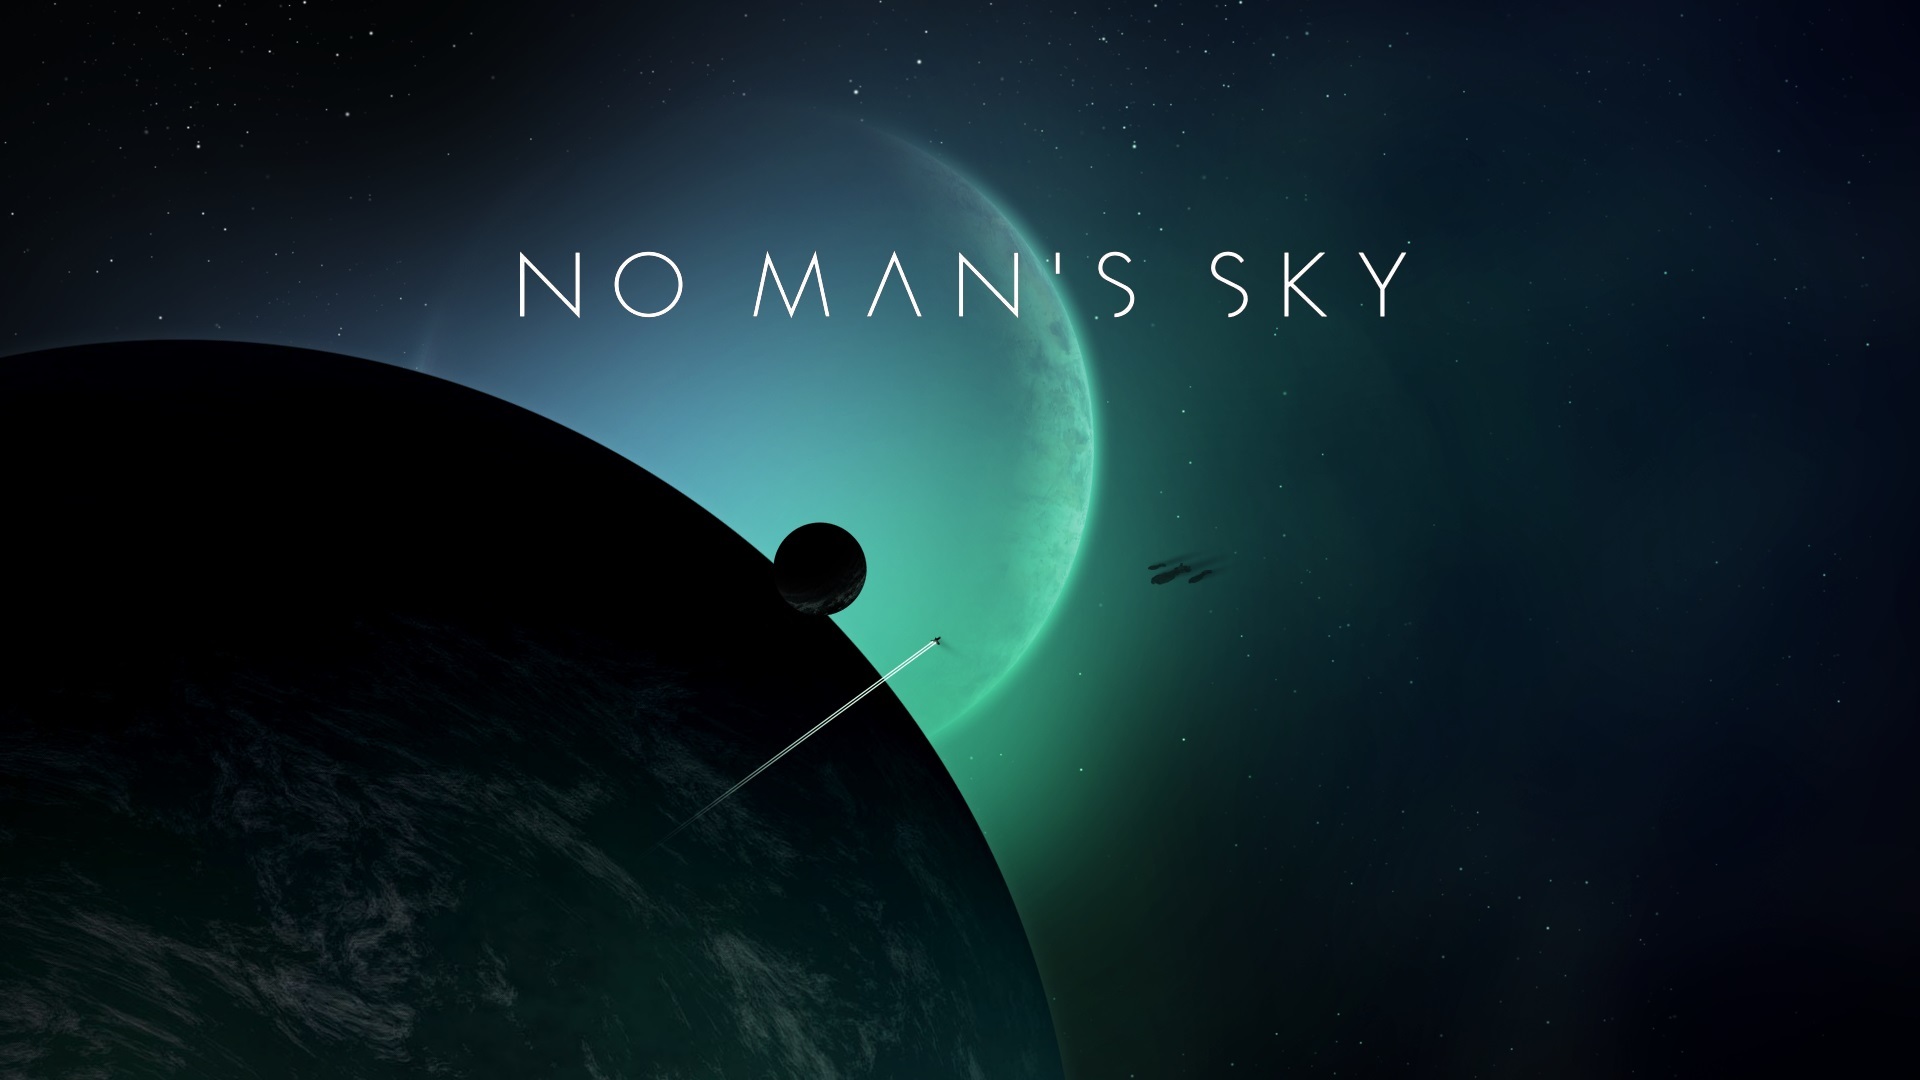 سی دی کی اریجینال استیم بازی No Man's Sky